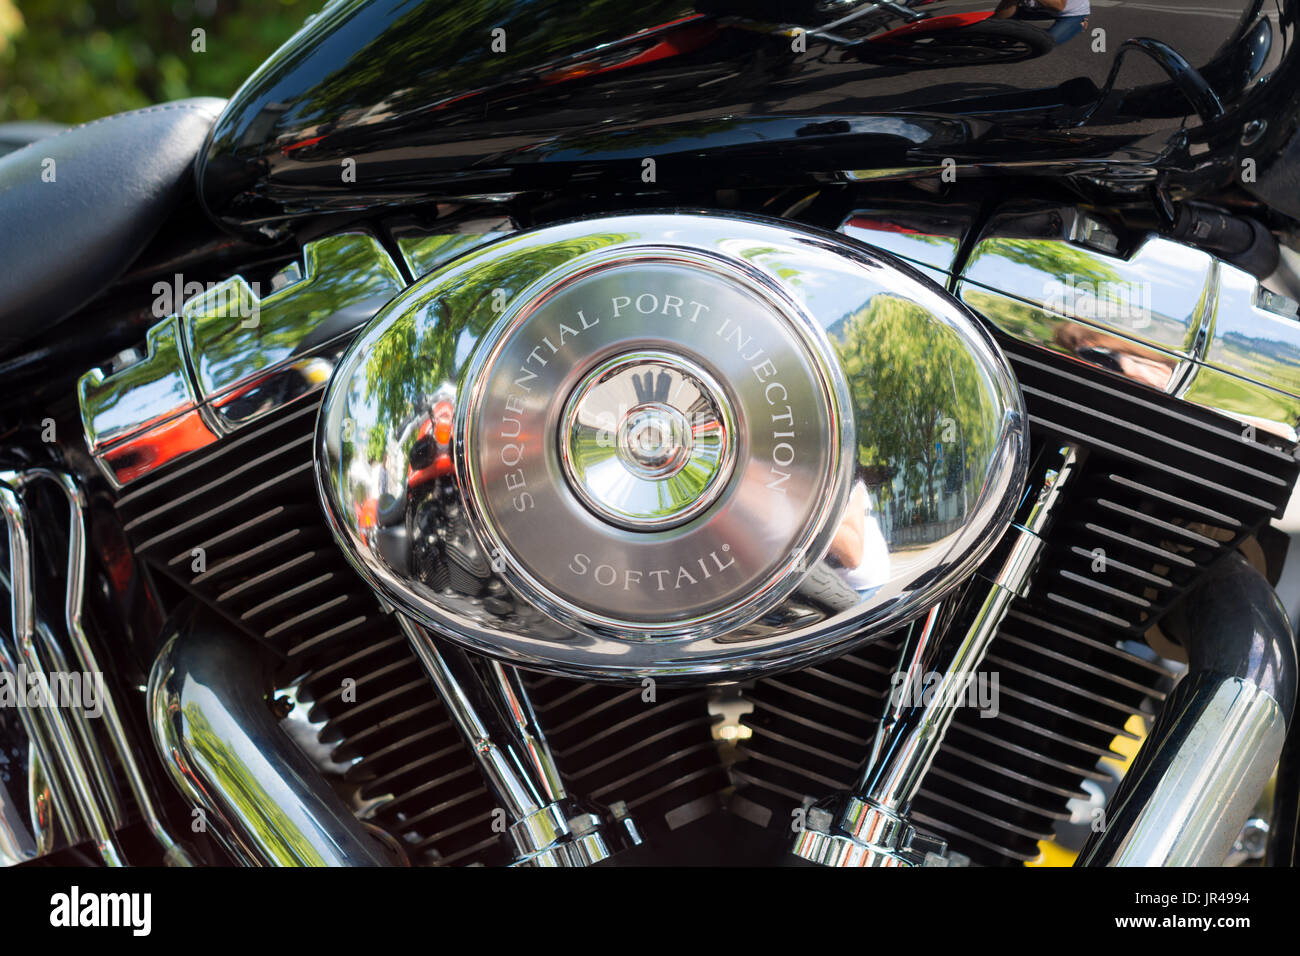 Zeigen Sie klassische amerikanische Motorräder. Details zu Motorradteilen. Vintage-Filtereffekt Stockfoto